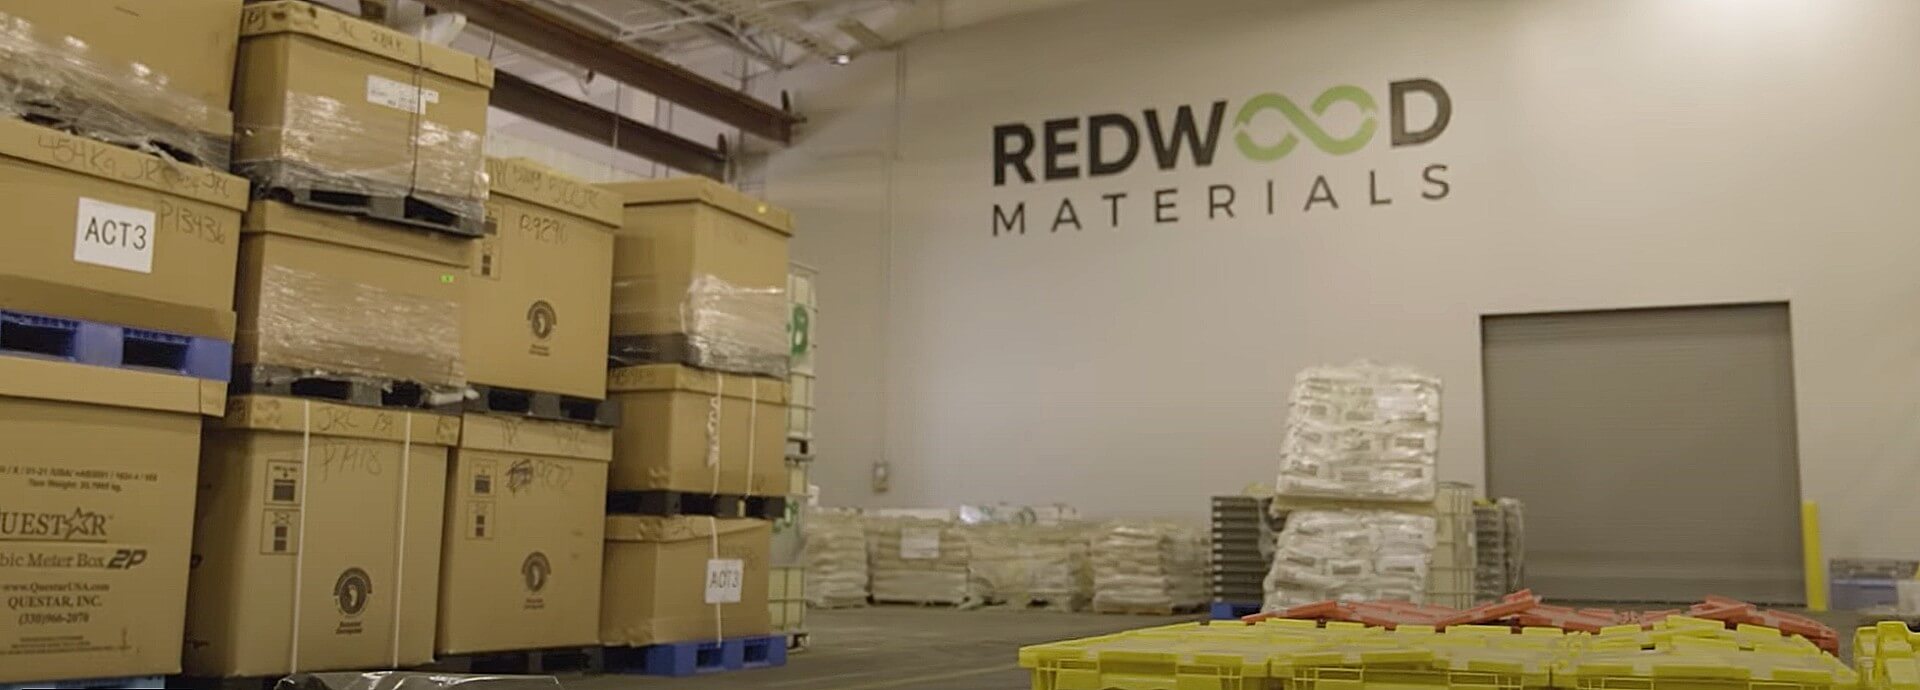 Redwood Materials goedgekeurd voor meer dan $ 100 miljoen aan belastingvoordelen